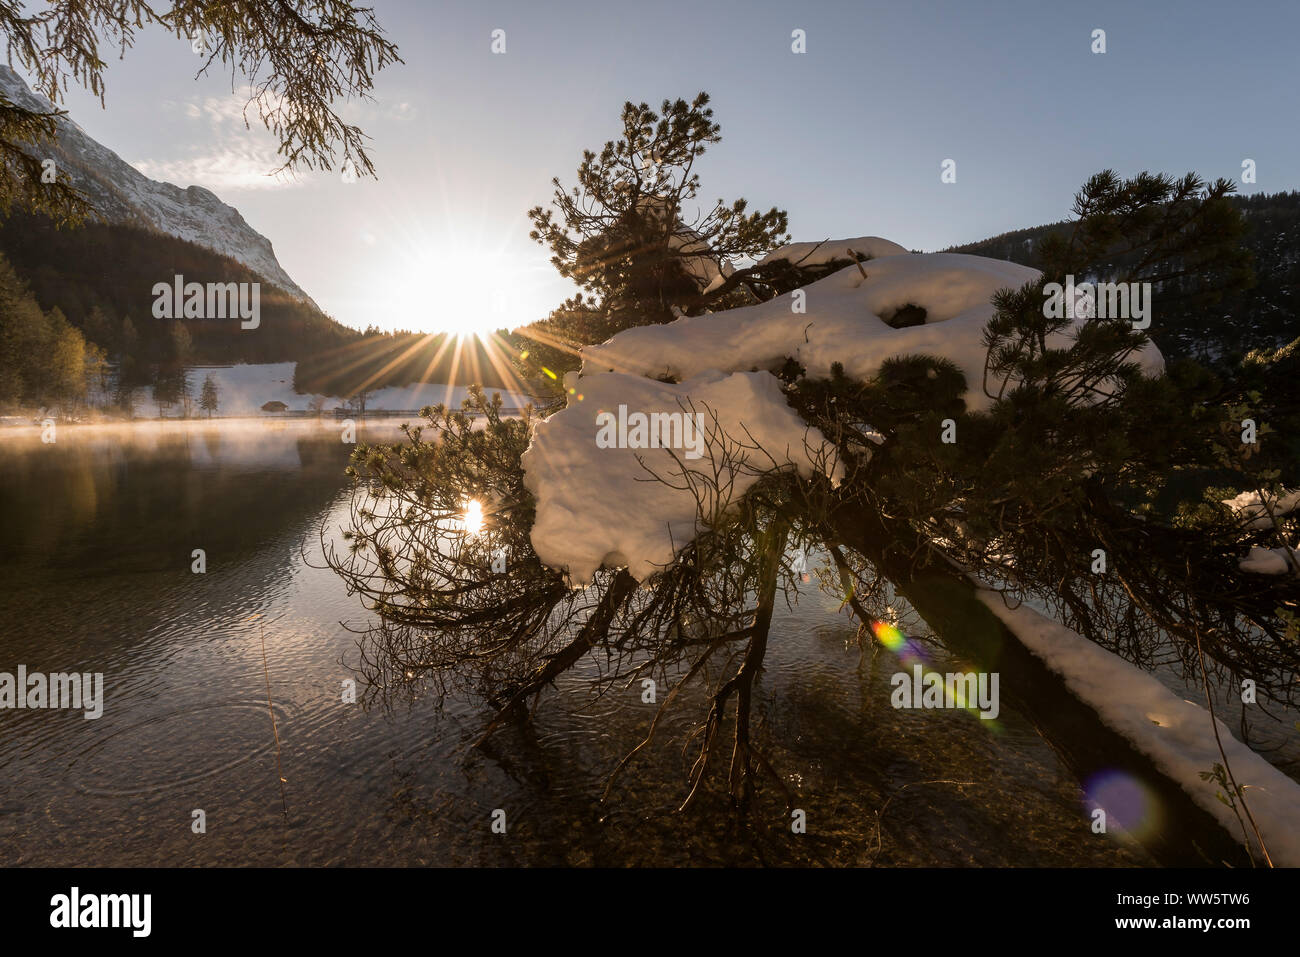 Situation de contre-jour du soleil couchant avec de forts rayons de soleil et reflet dans l'eau d'un petit lac de montagne alpine. Au premier plan un arbre couvert de neige. Banque D'Images